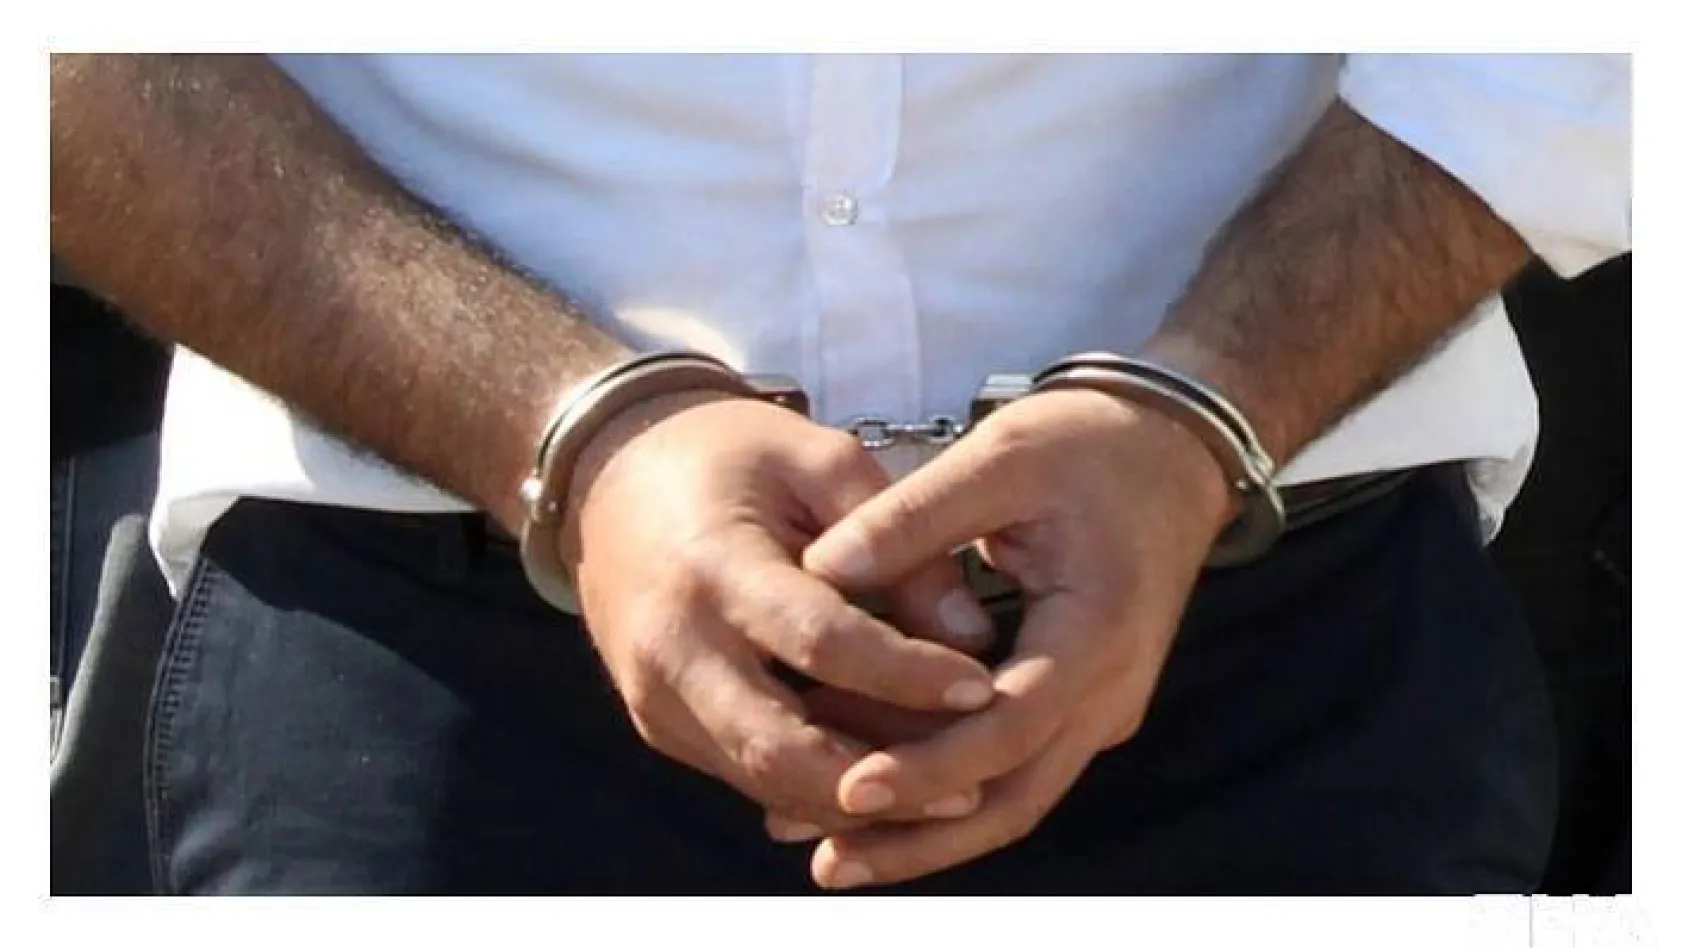 İstanbul'da uyuşturucu soruşturması:30 gözaltı kararı